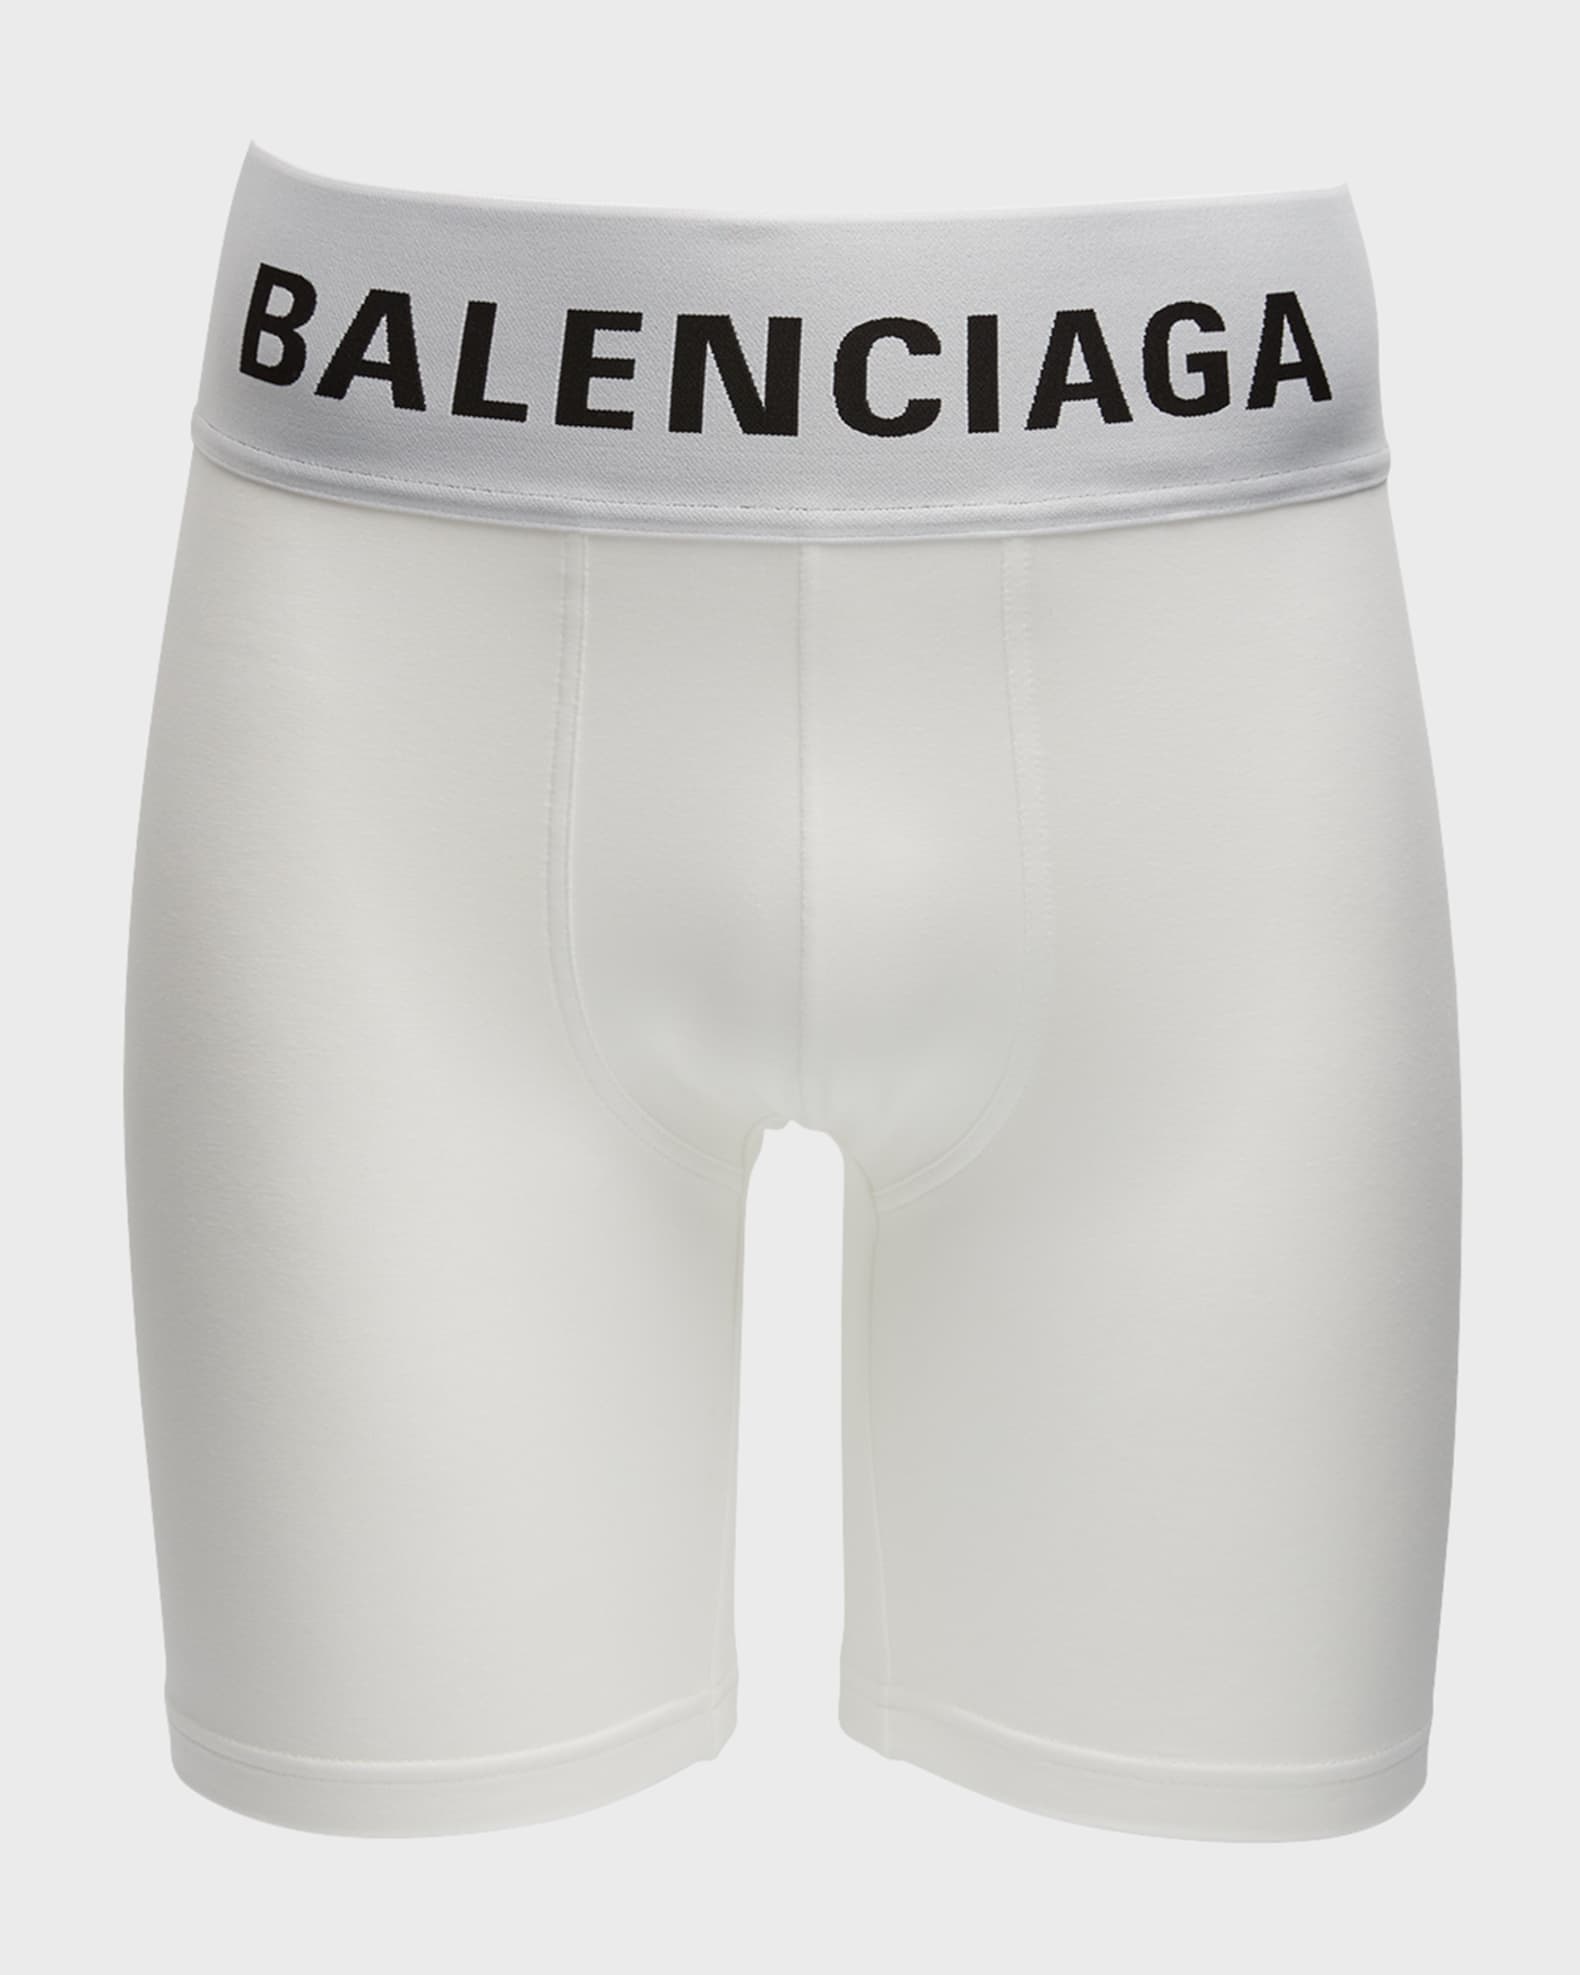 BALENCIAGA, Black Men's Boxer